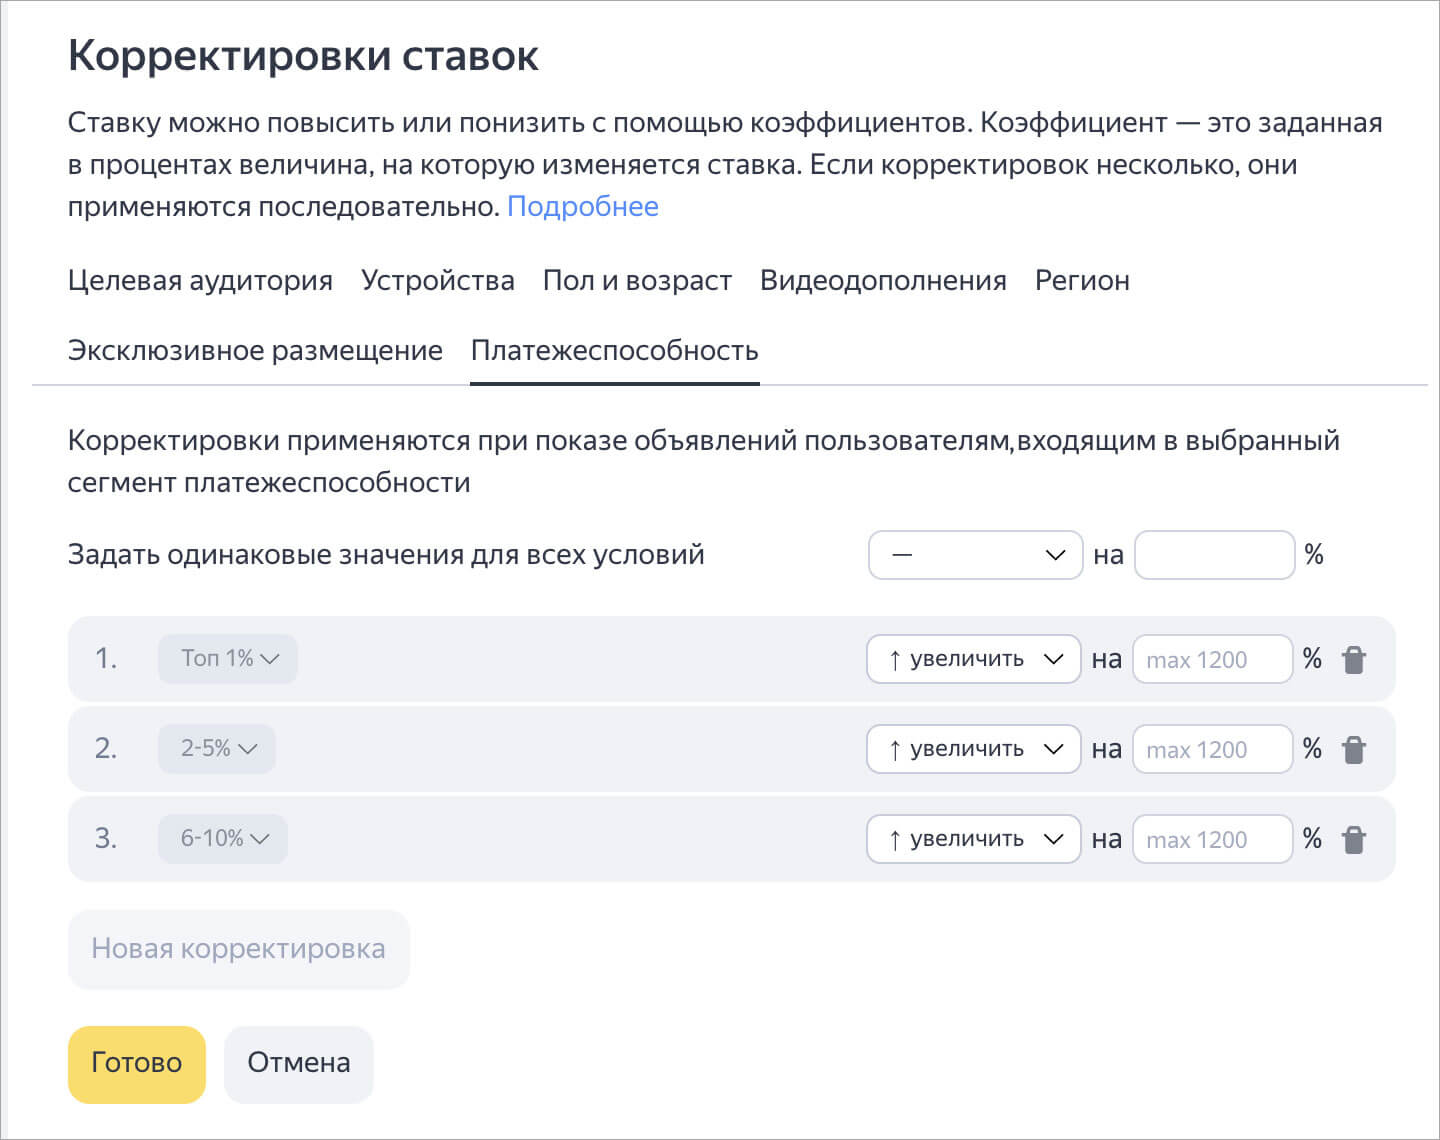 В Яндекс.Директ появились корректировки ставок на платёжеспособную аудиторию